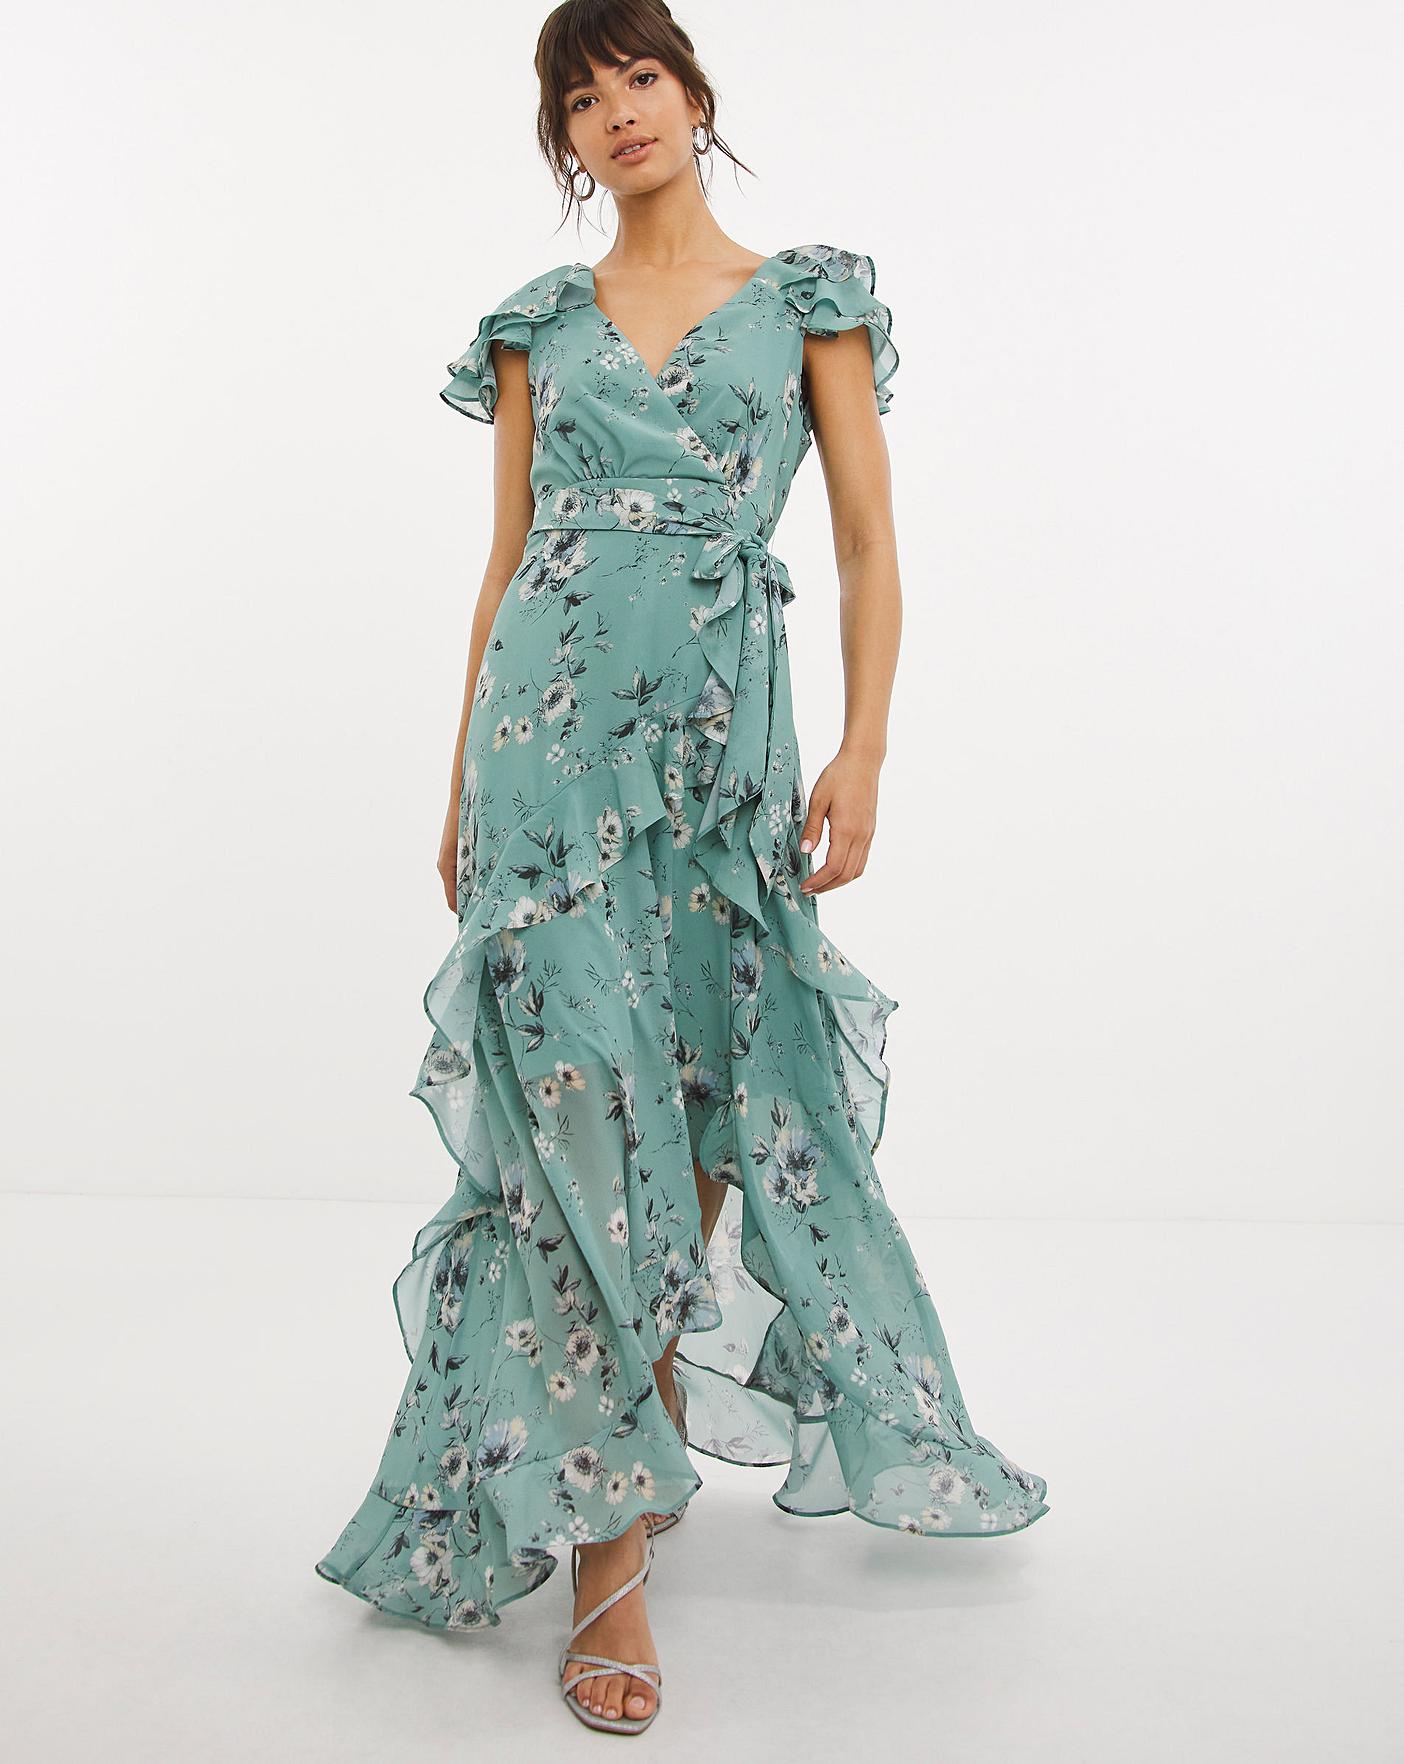 Joanna Hope Print Ruffle Maxi Dress ...